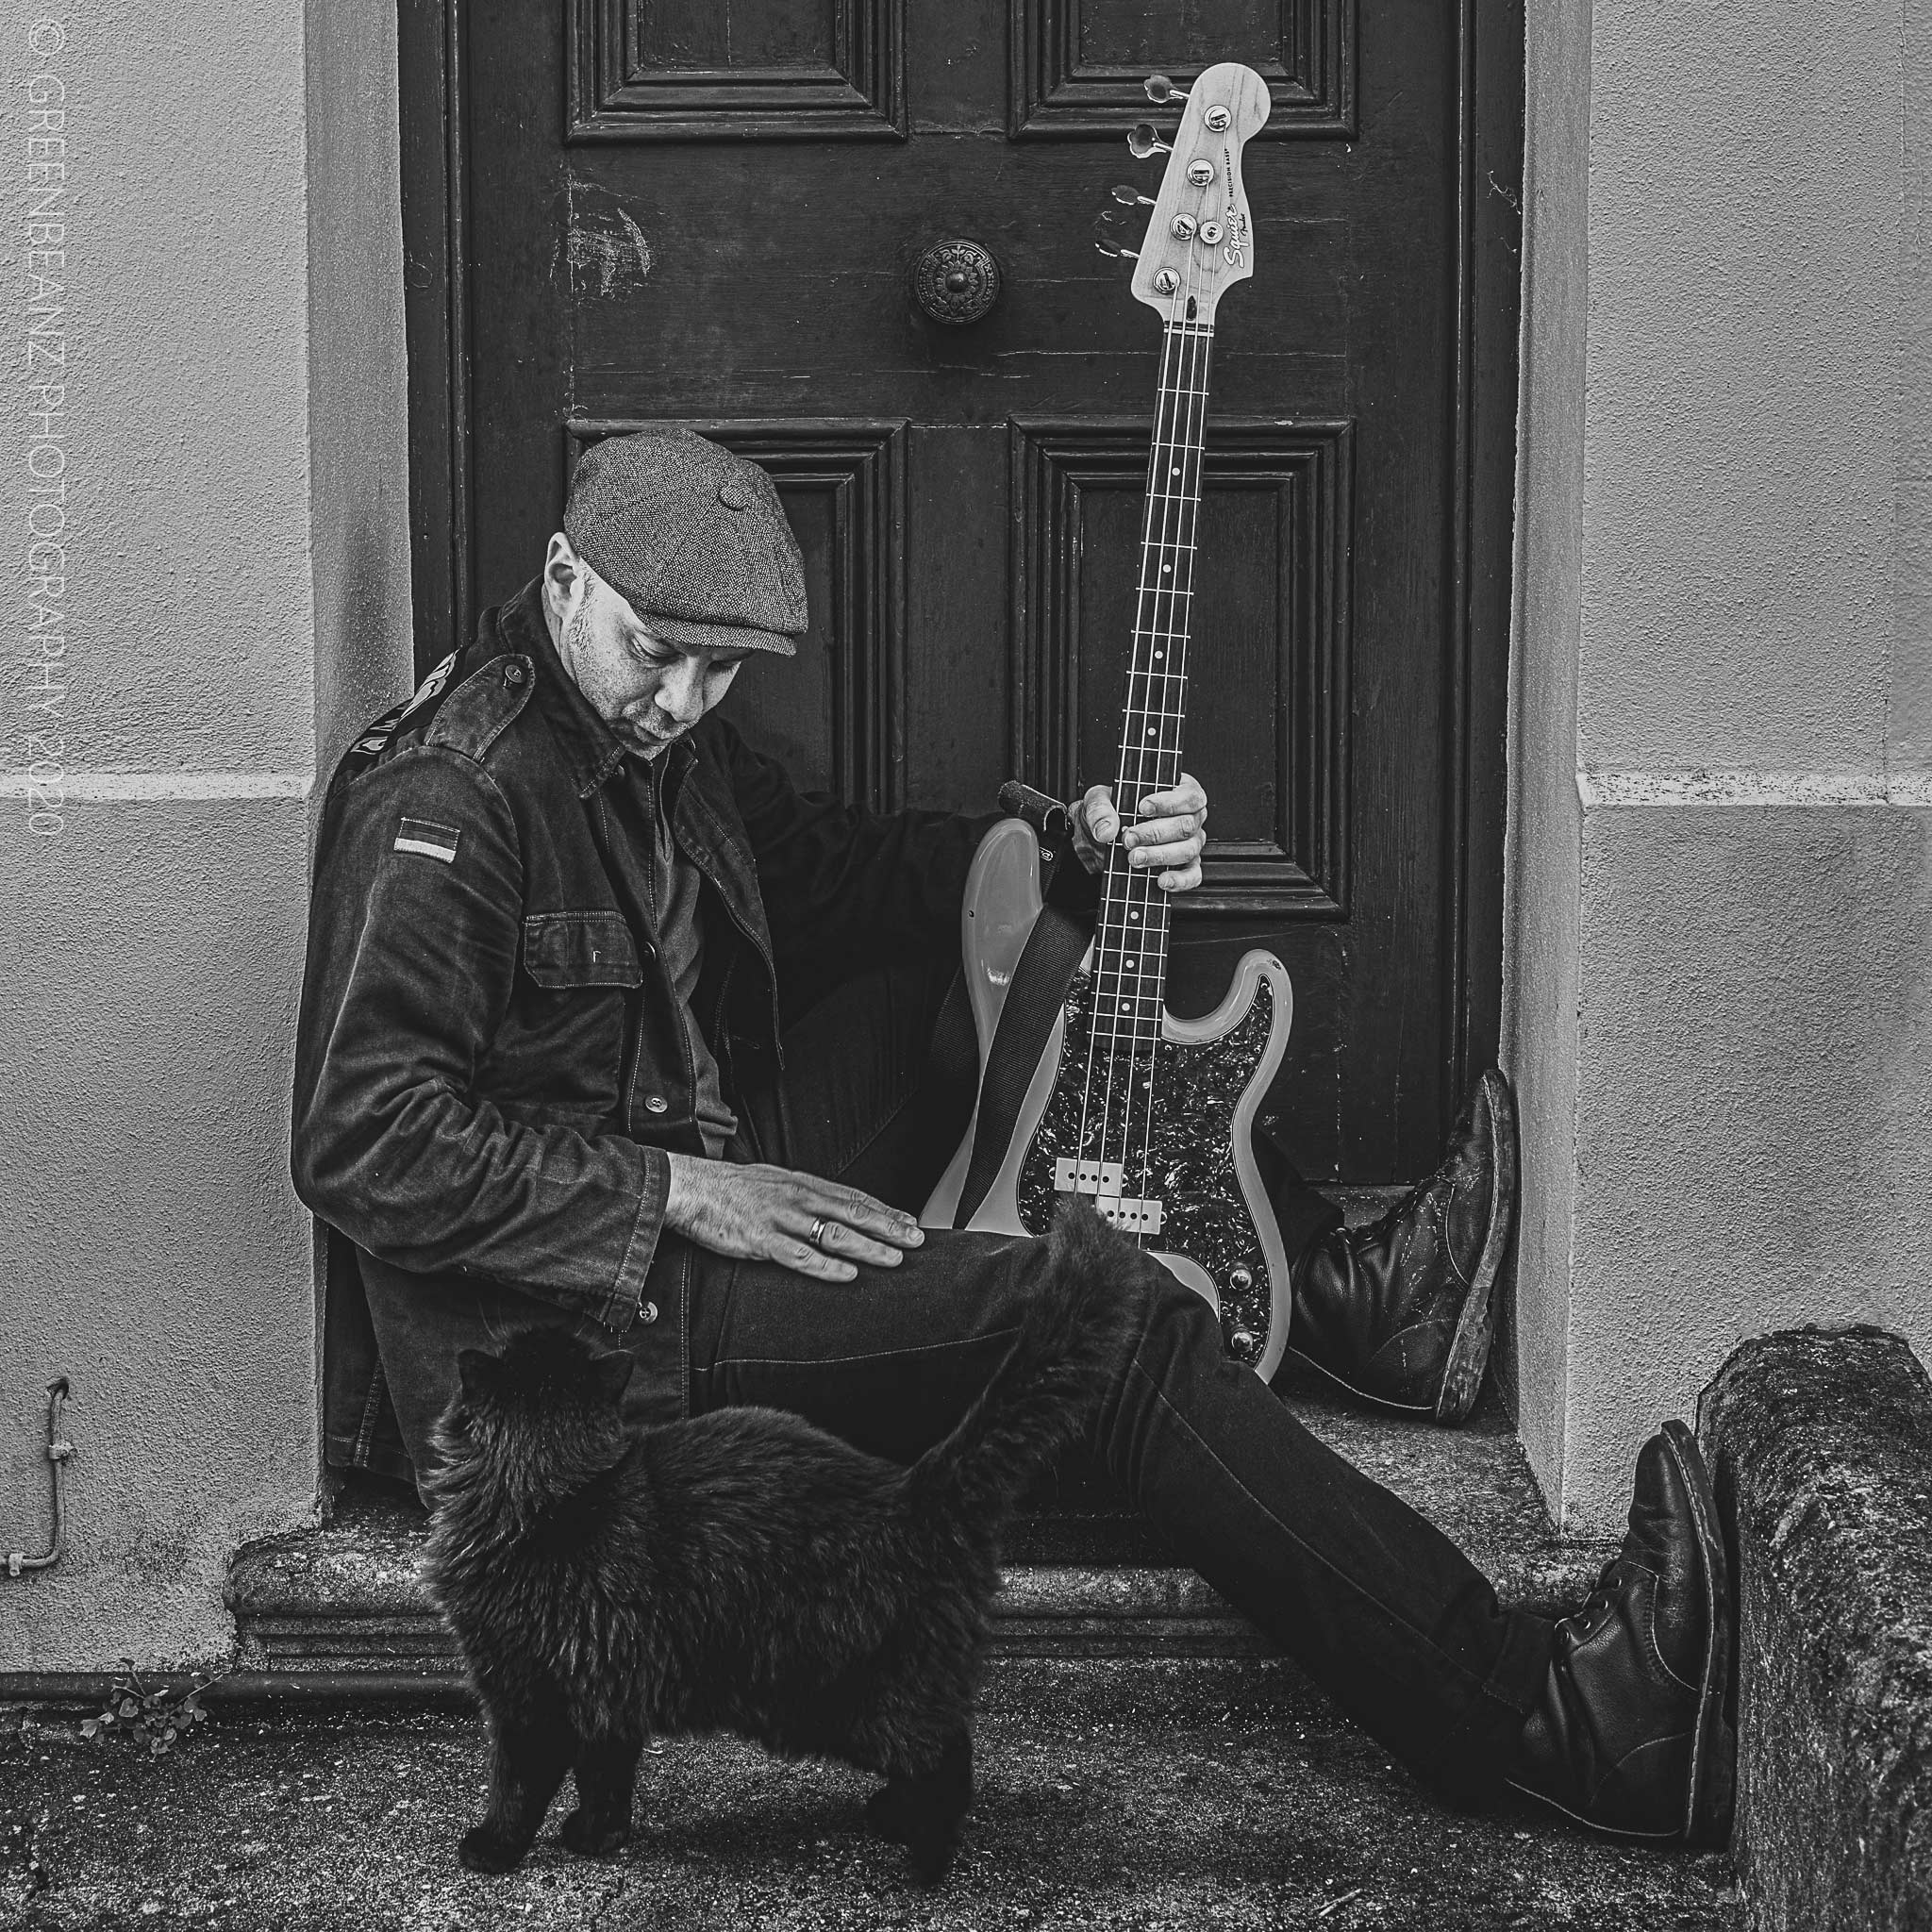 Adam punk bass player with Murphy the Cat